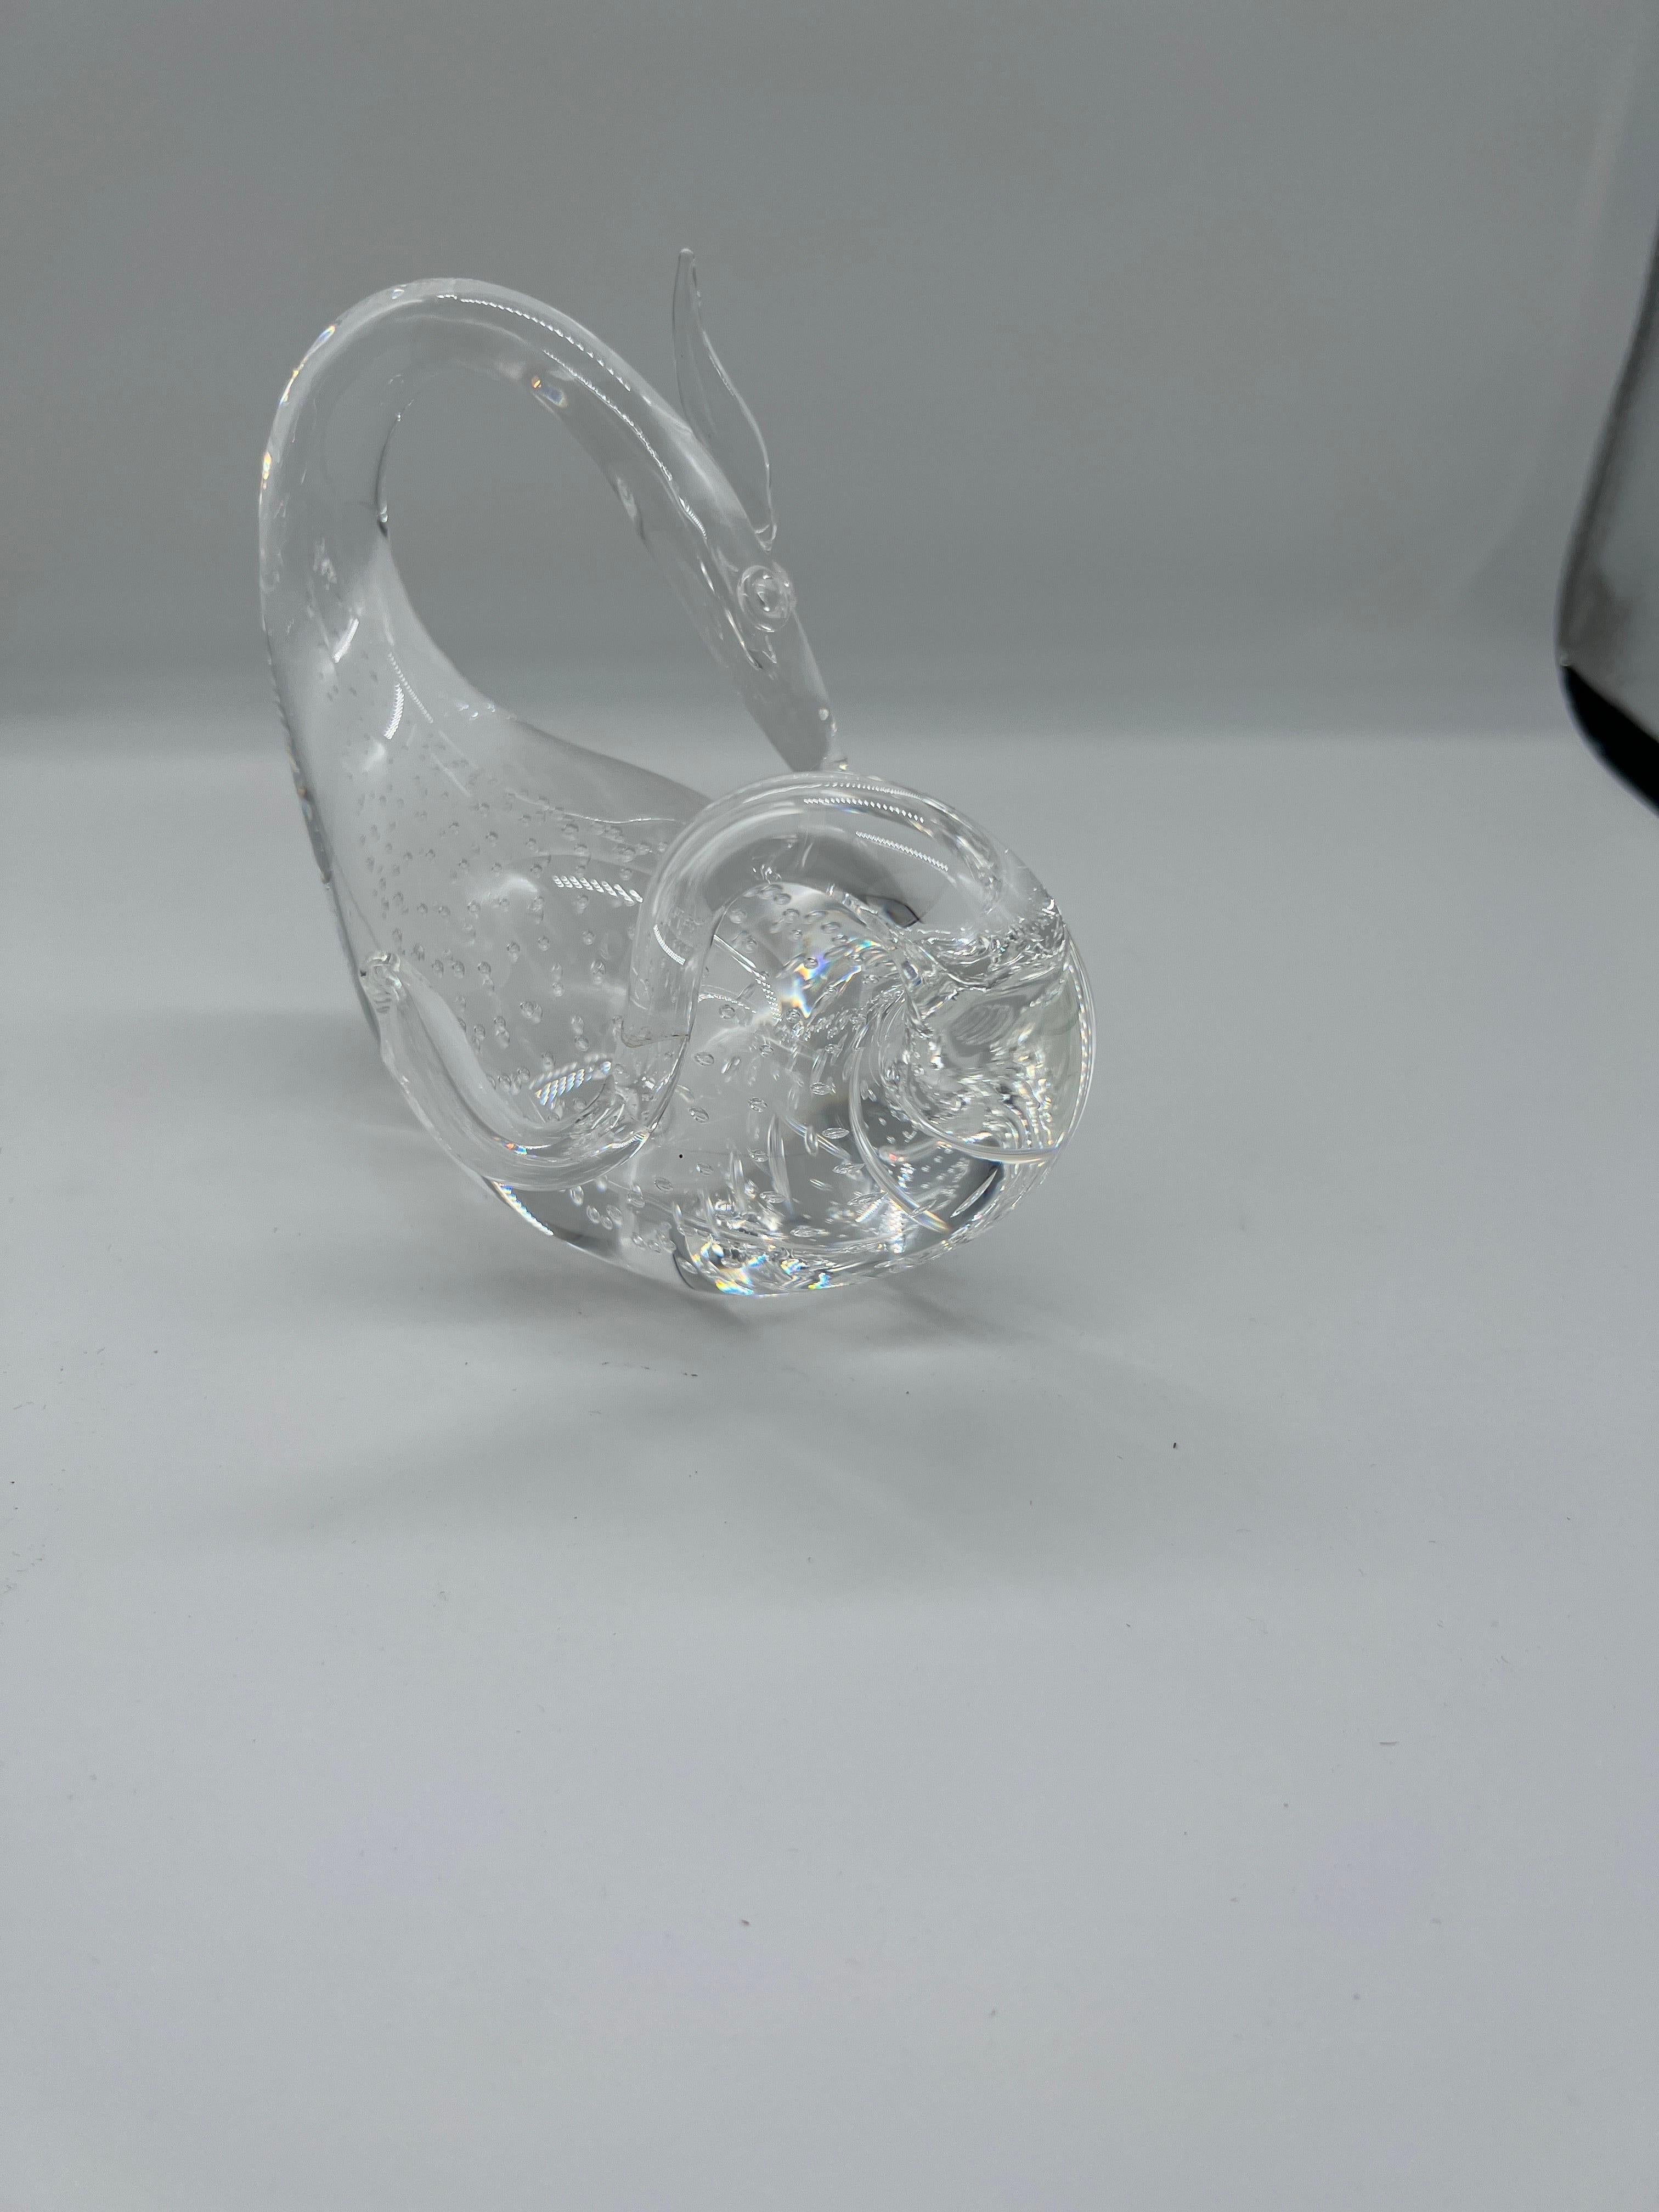 Figurine dragon en cristal à bulles contrôlées de Steuben Conçue par Bernard Wolff. 
Cette étonnante figurine en cristal est fabriquée par la célèbre société de cristal Steuben et présente une forme organique entièrement soufflée à la main avec un